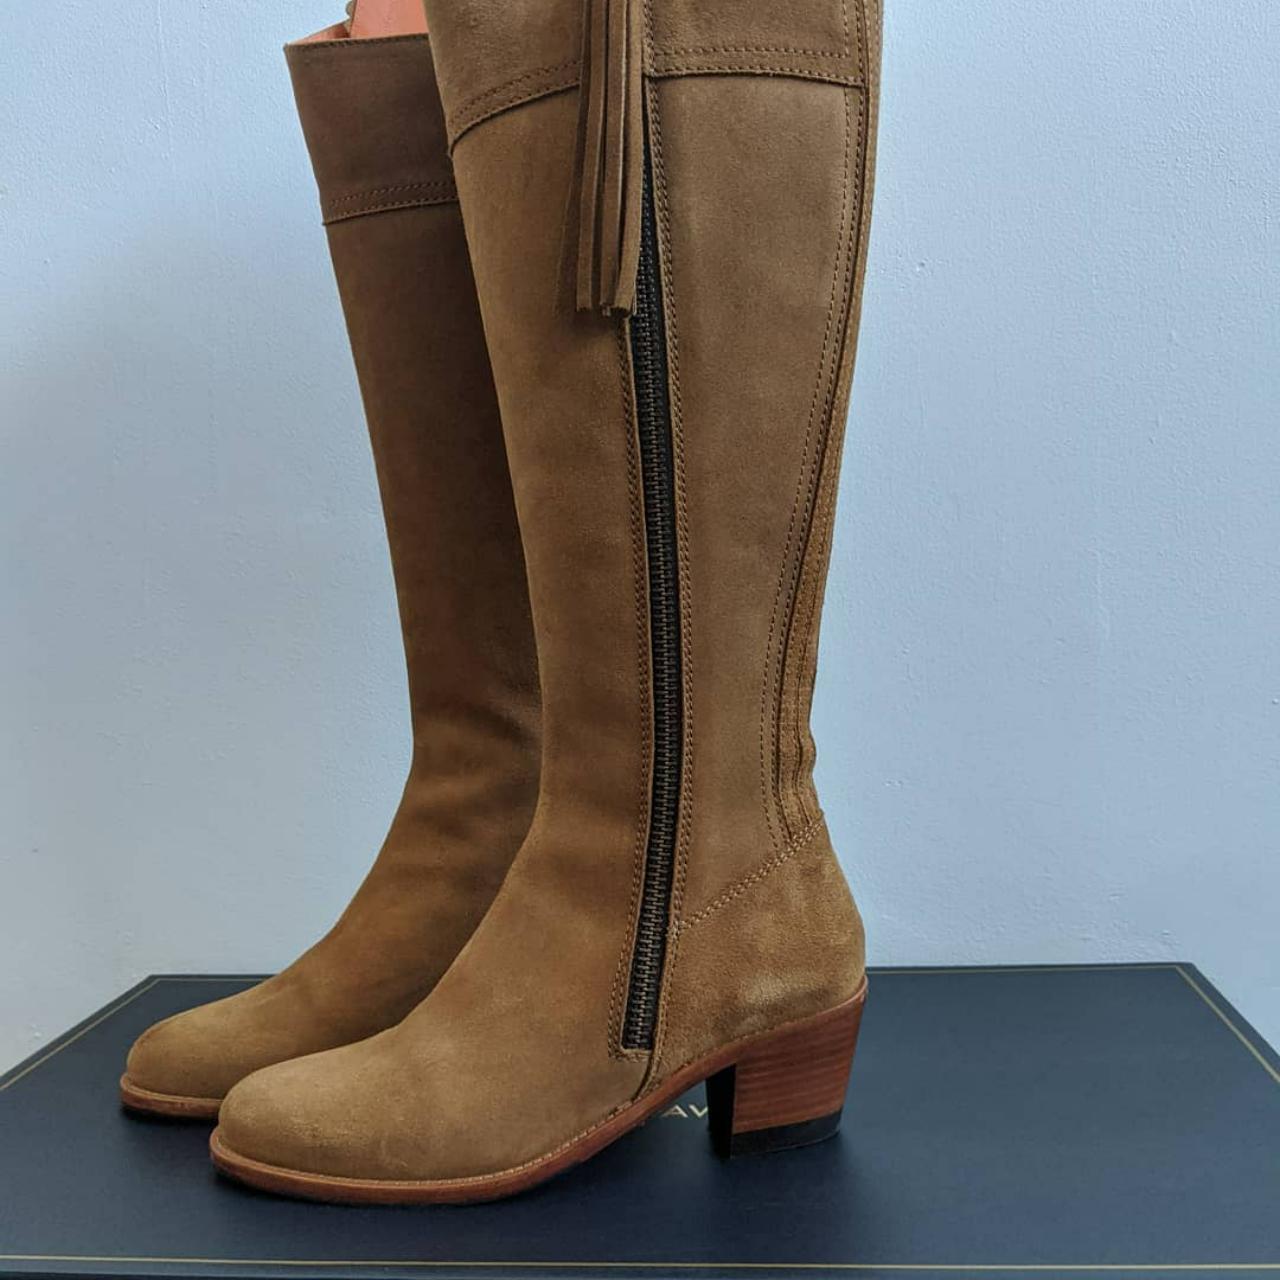 Fairfax & Favor heeled Regina tall boots size 5... - Depop